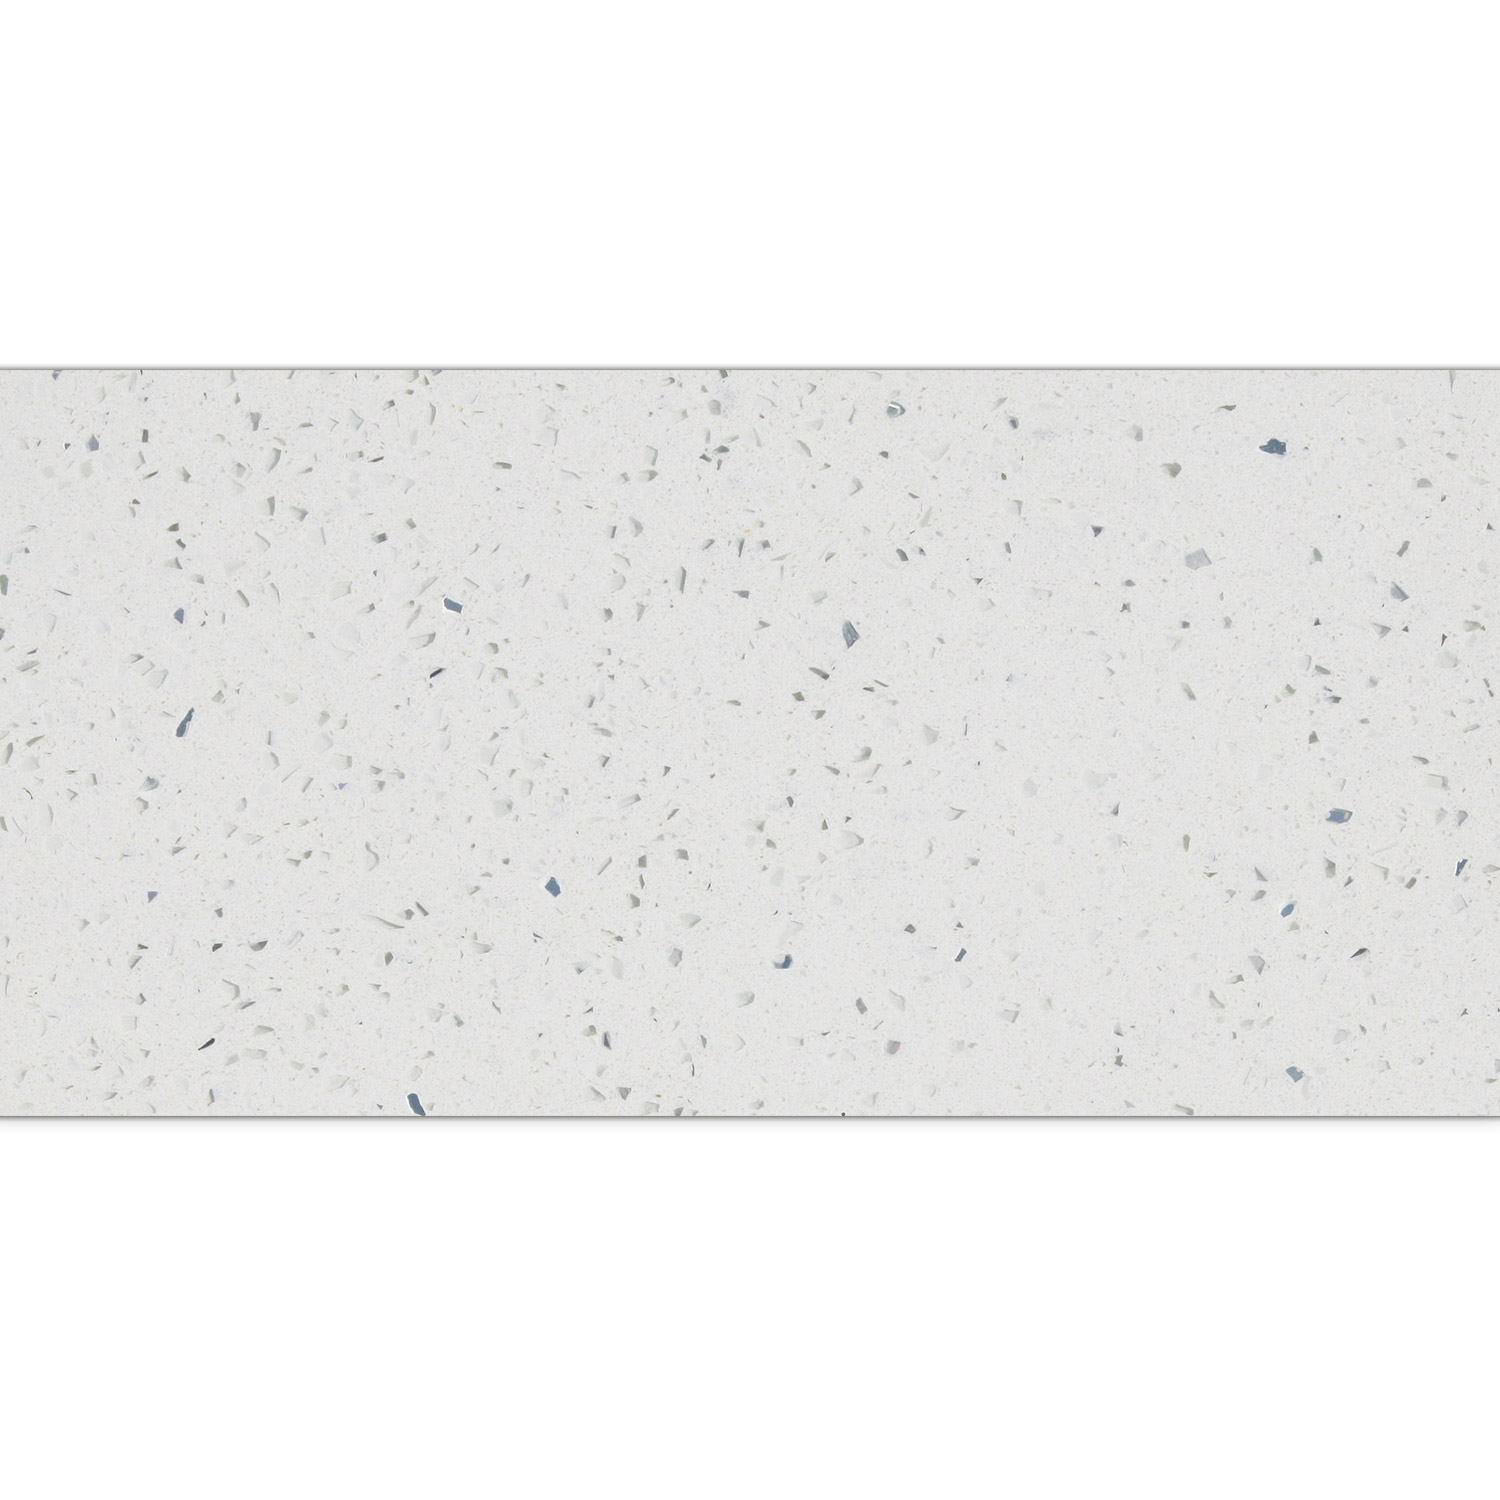 Floor Tiles Quartz Composite White 30x60cm